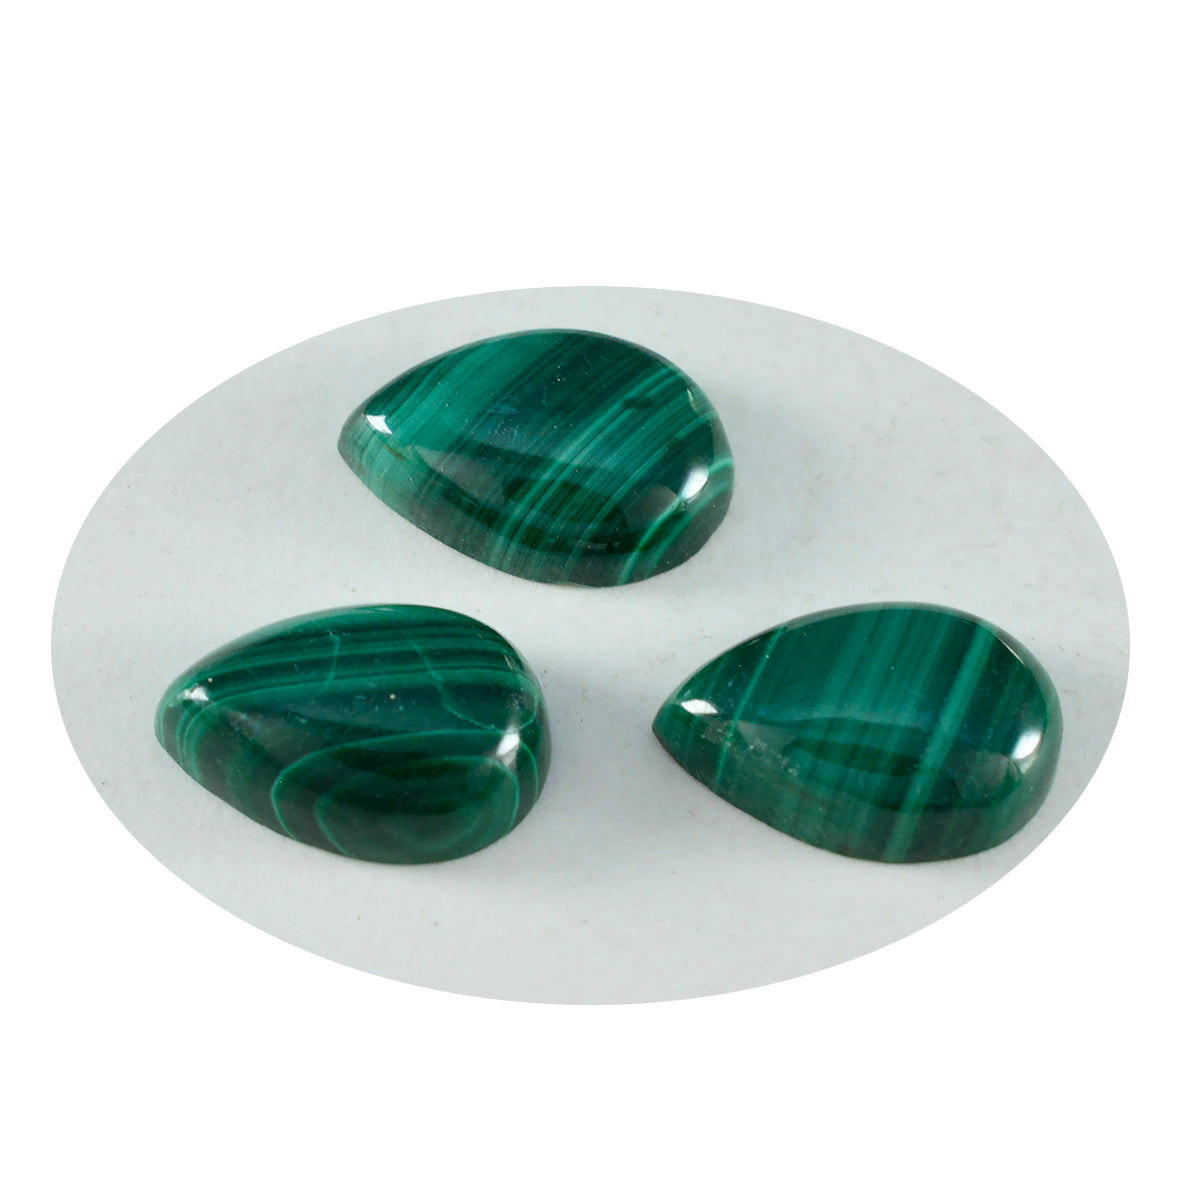 riyogems 1 шт., зеленый малахитовый кабошон 7x10 мм, грушевидная форма, хорошее качество, свободные драгоценные камни